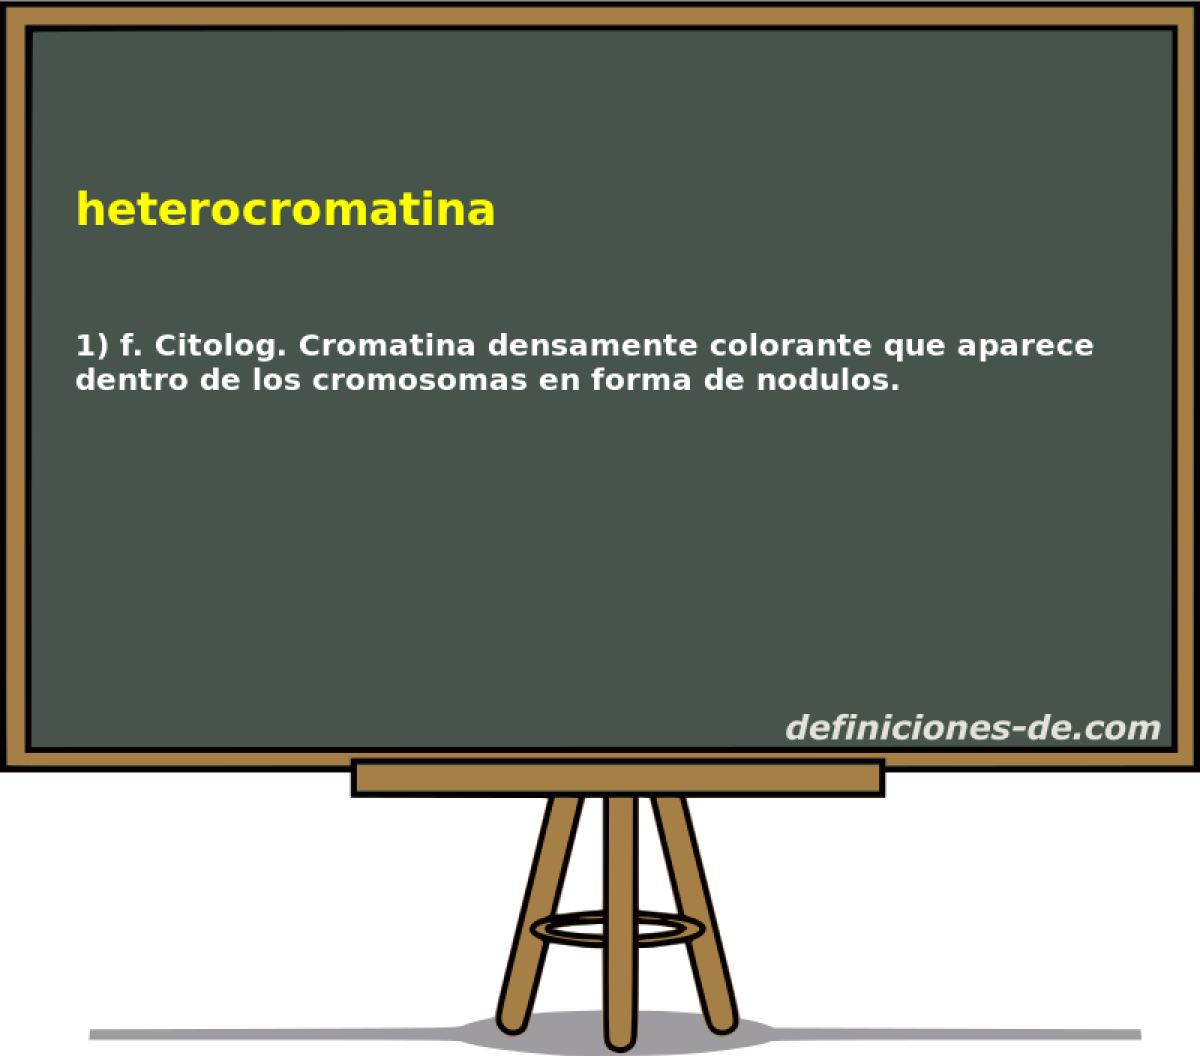 heterocromatina 